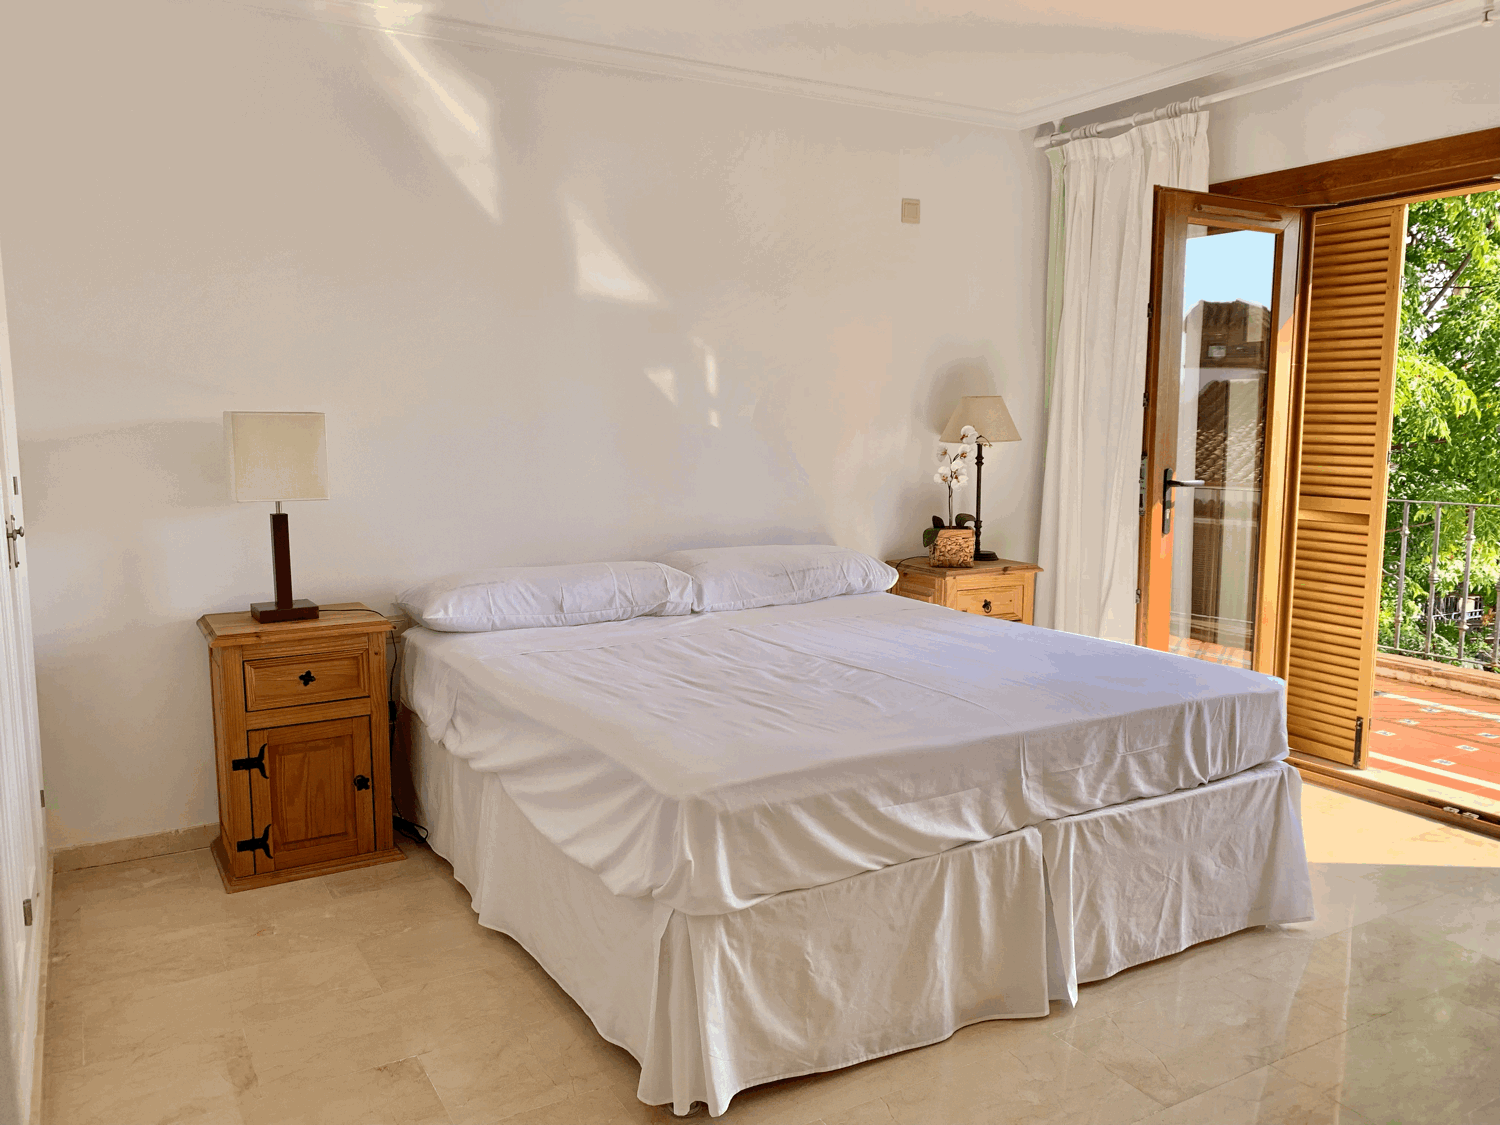 Precioso adosado en Alcaidesa con acceso directo a la playa con un pequeño apartamento separado